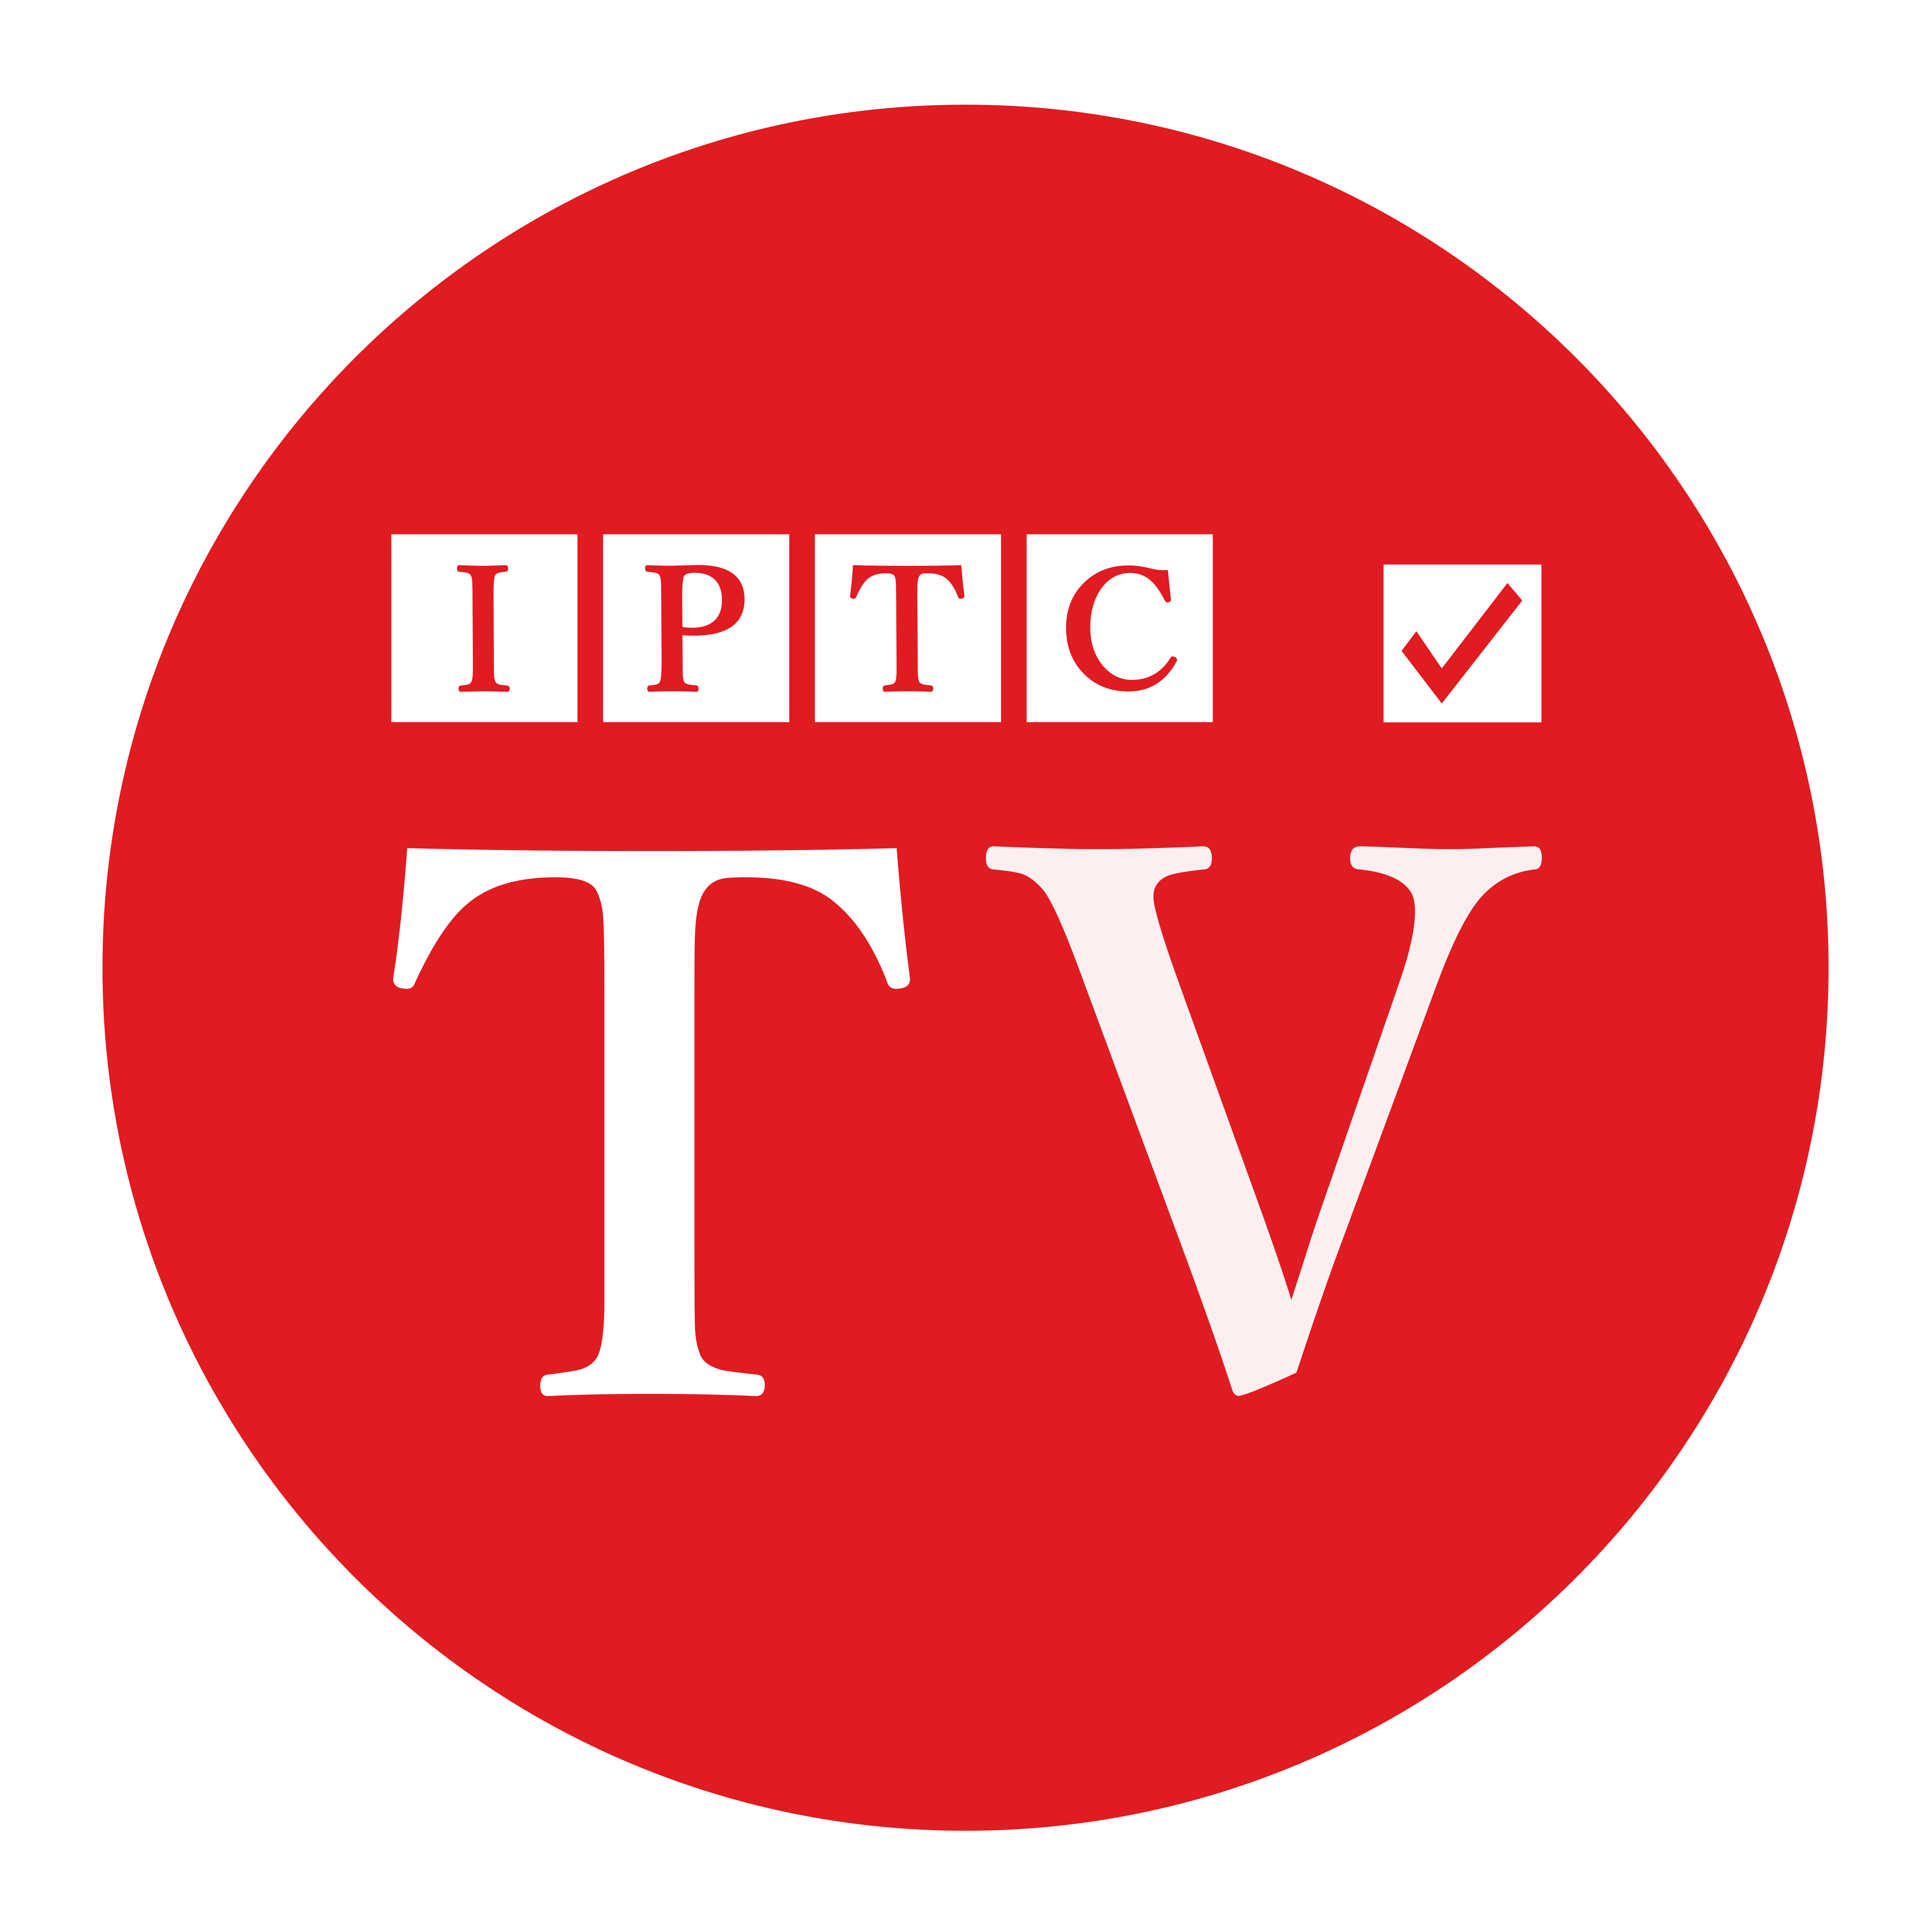 IPTC TV Department